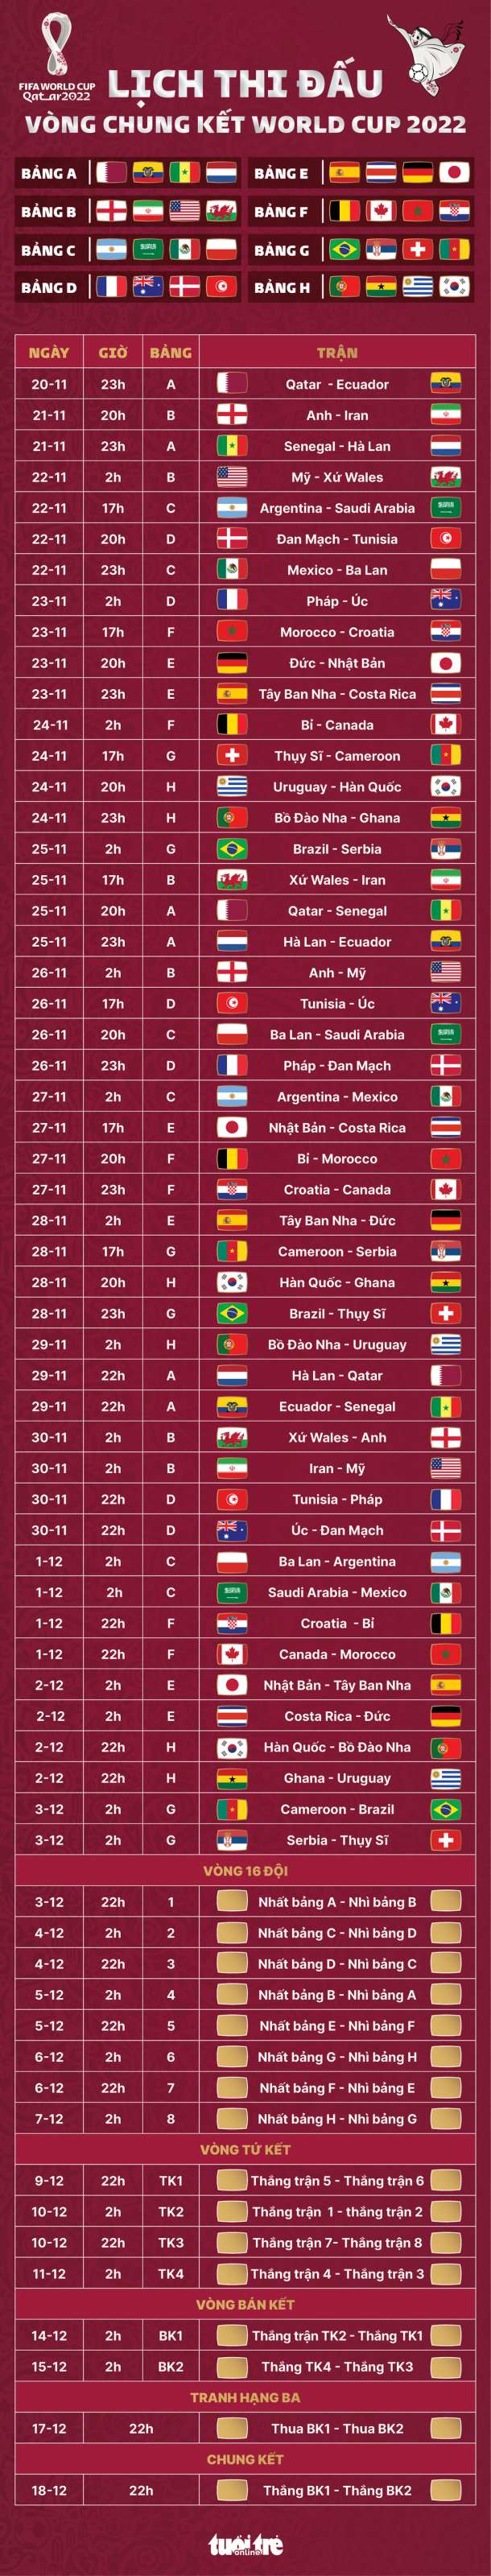 Lịch thi đấu World Cup 2022 với toàn bộ 64 trận đấu